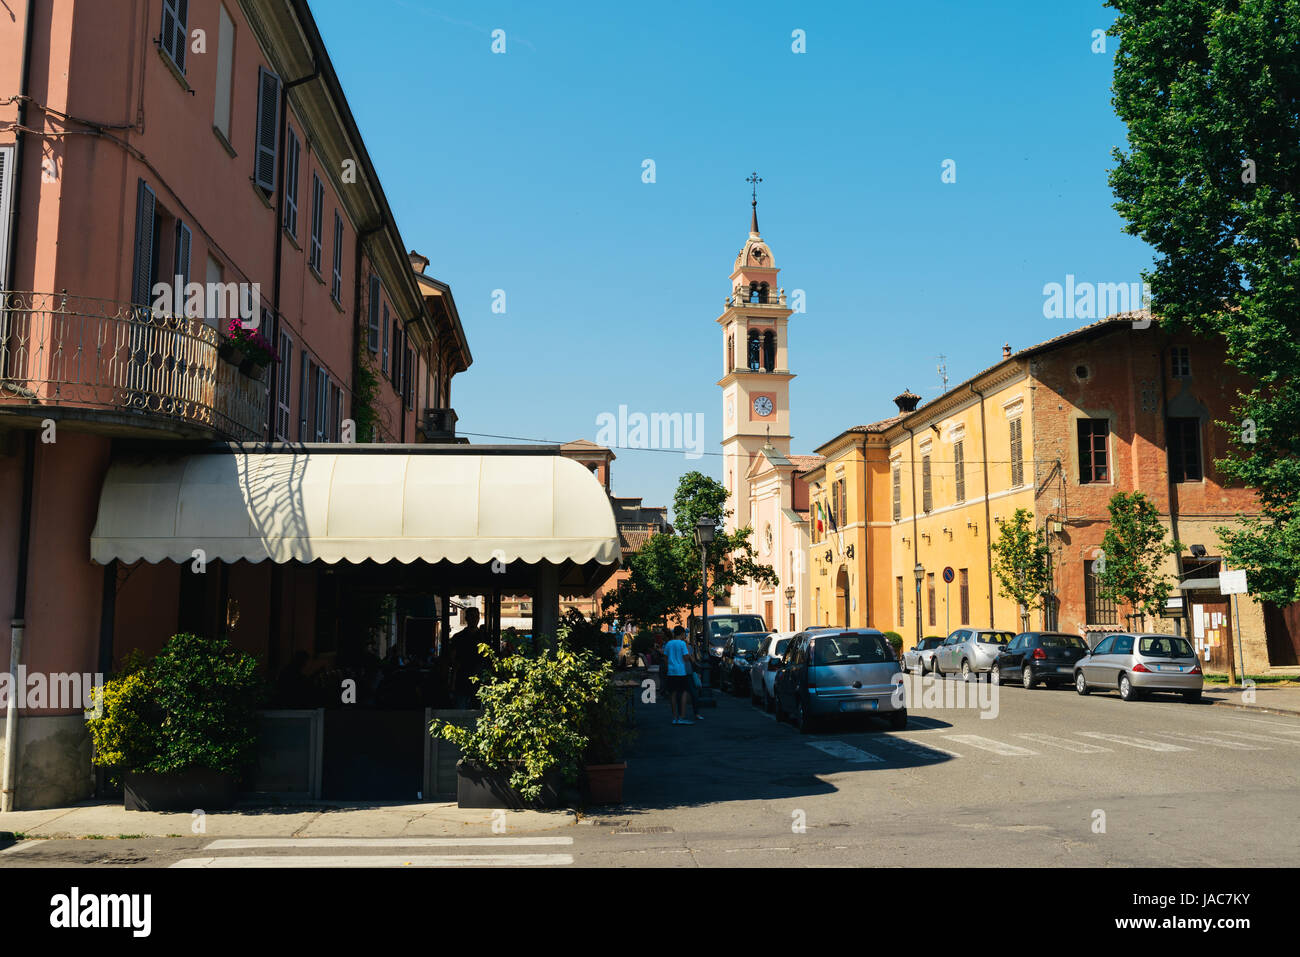 Un café dans une petite ville dans la région Émilie-romagne en Italie Banque D'Images